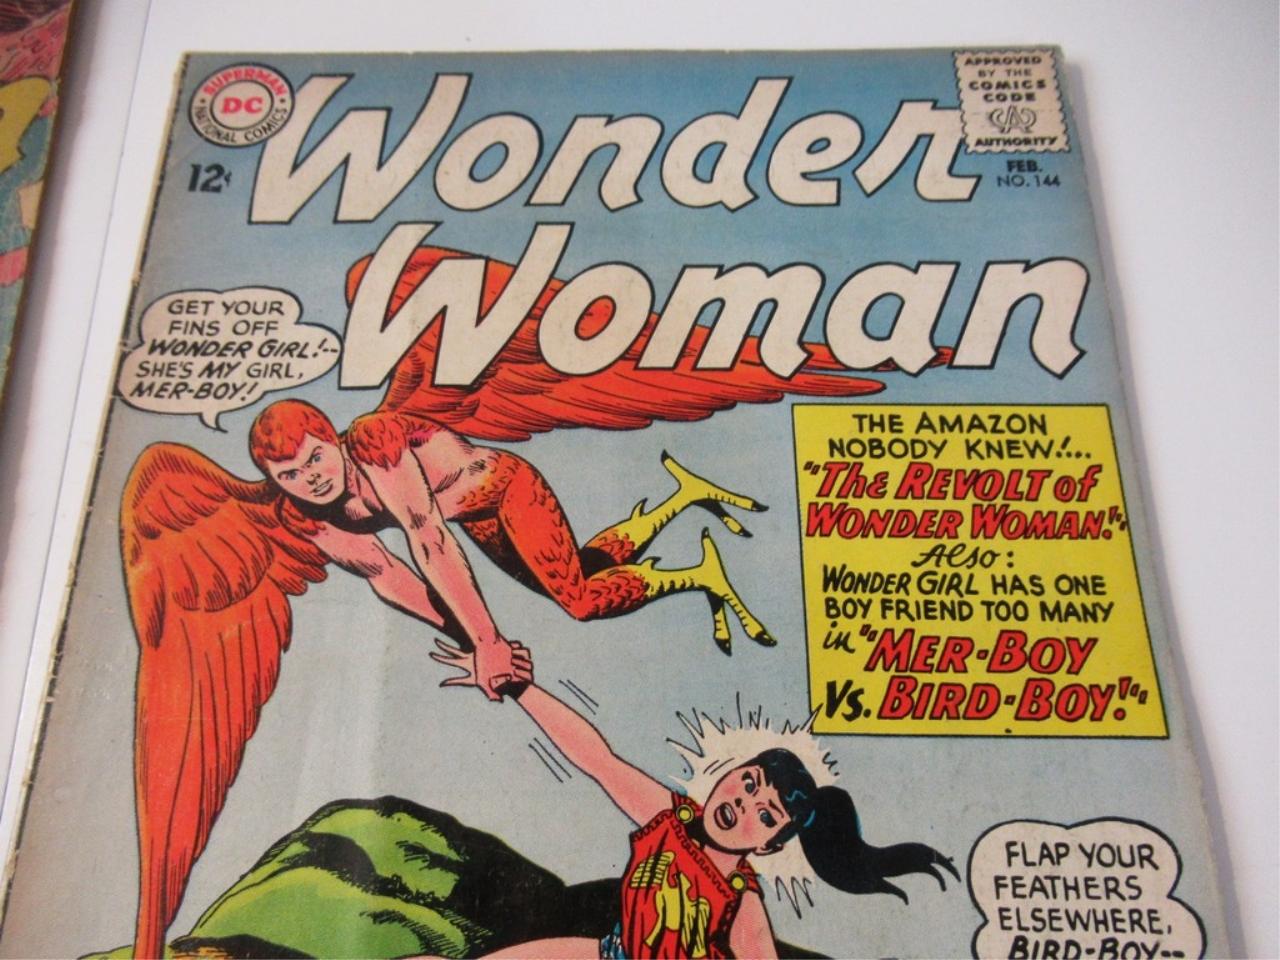 Wonder Woman #114/144/154